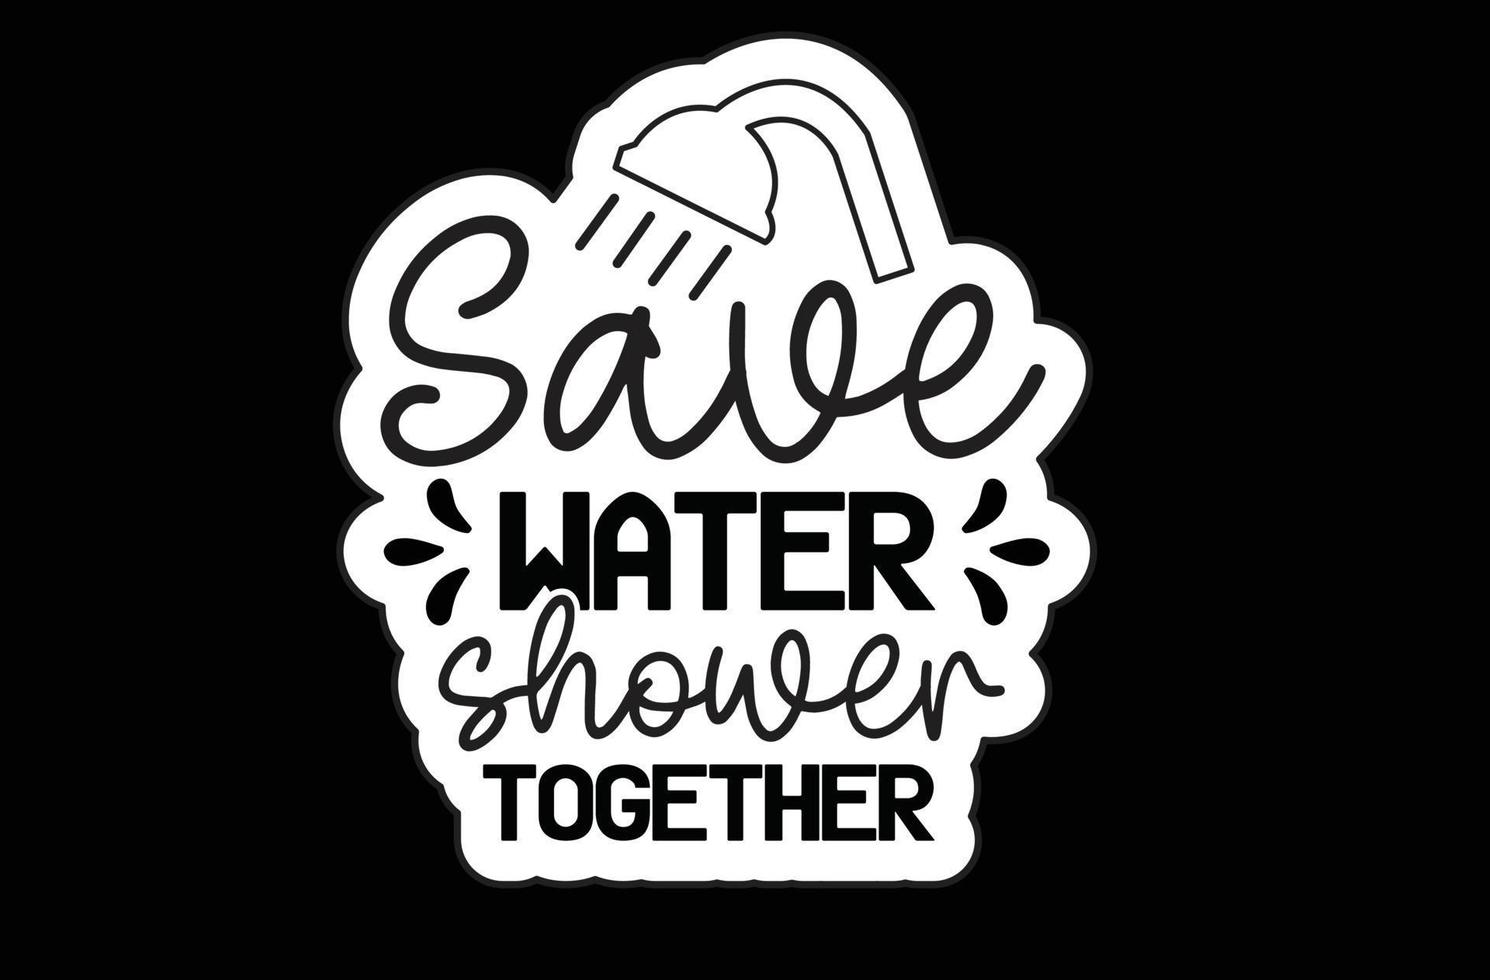 Save Water Shower Together svg sticker design vector